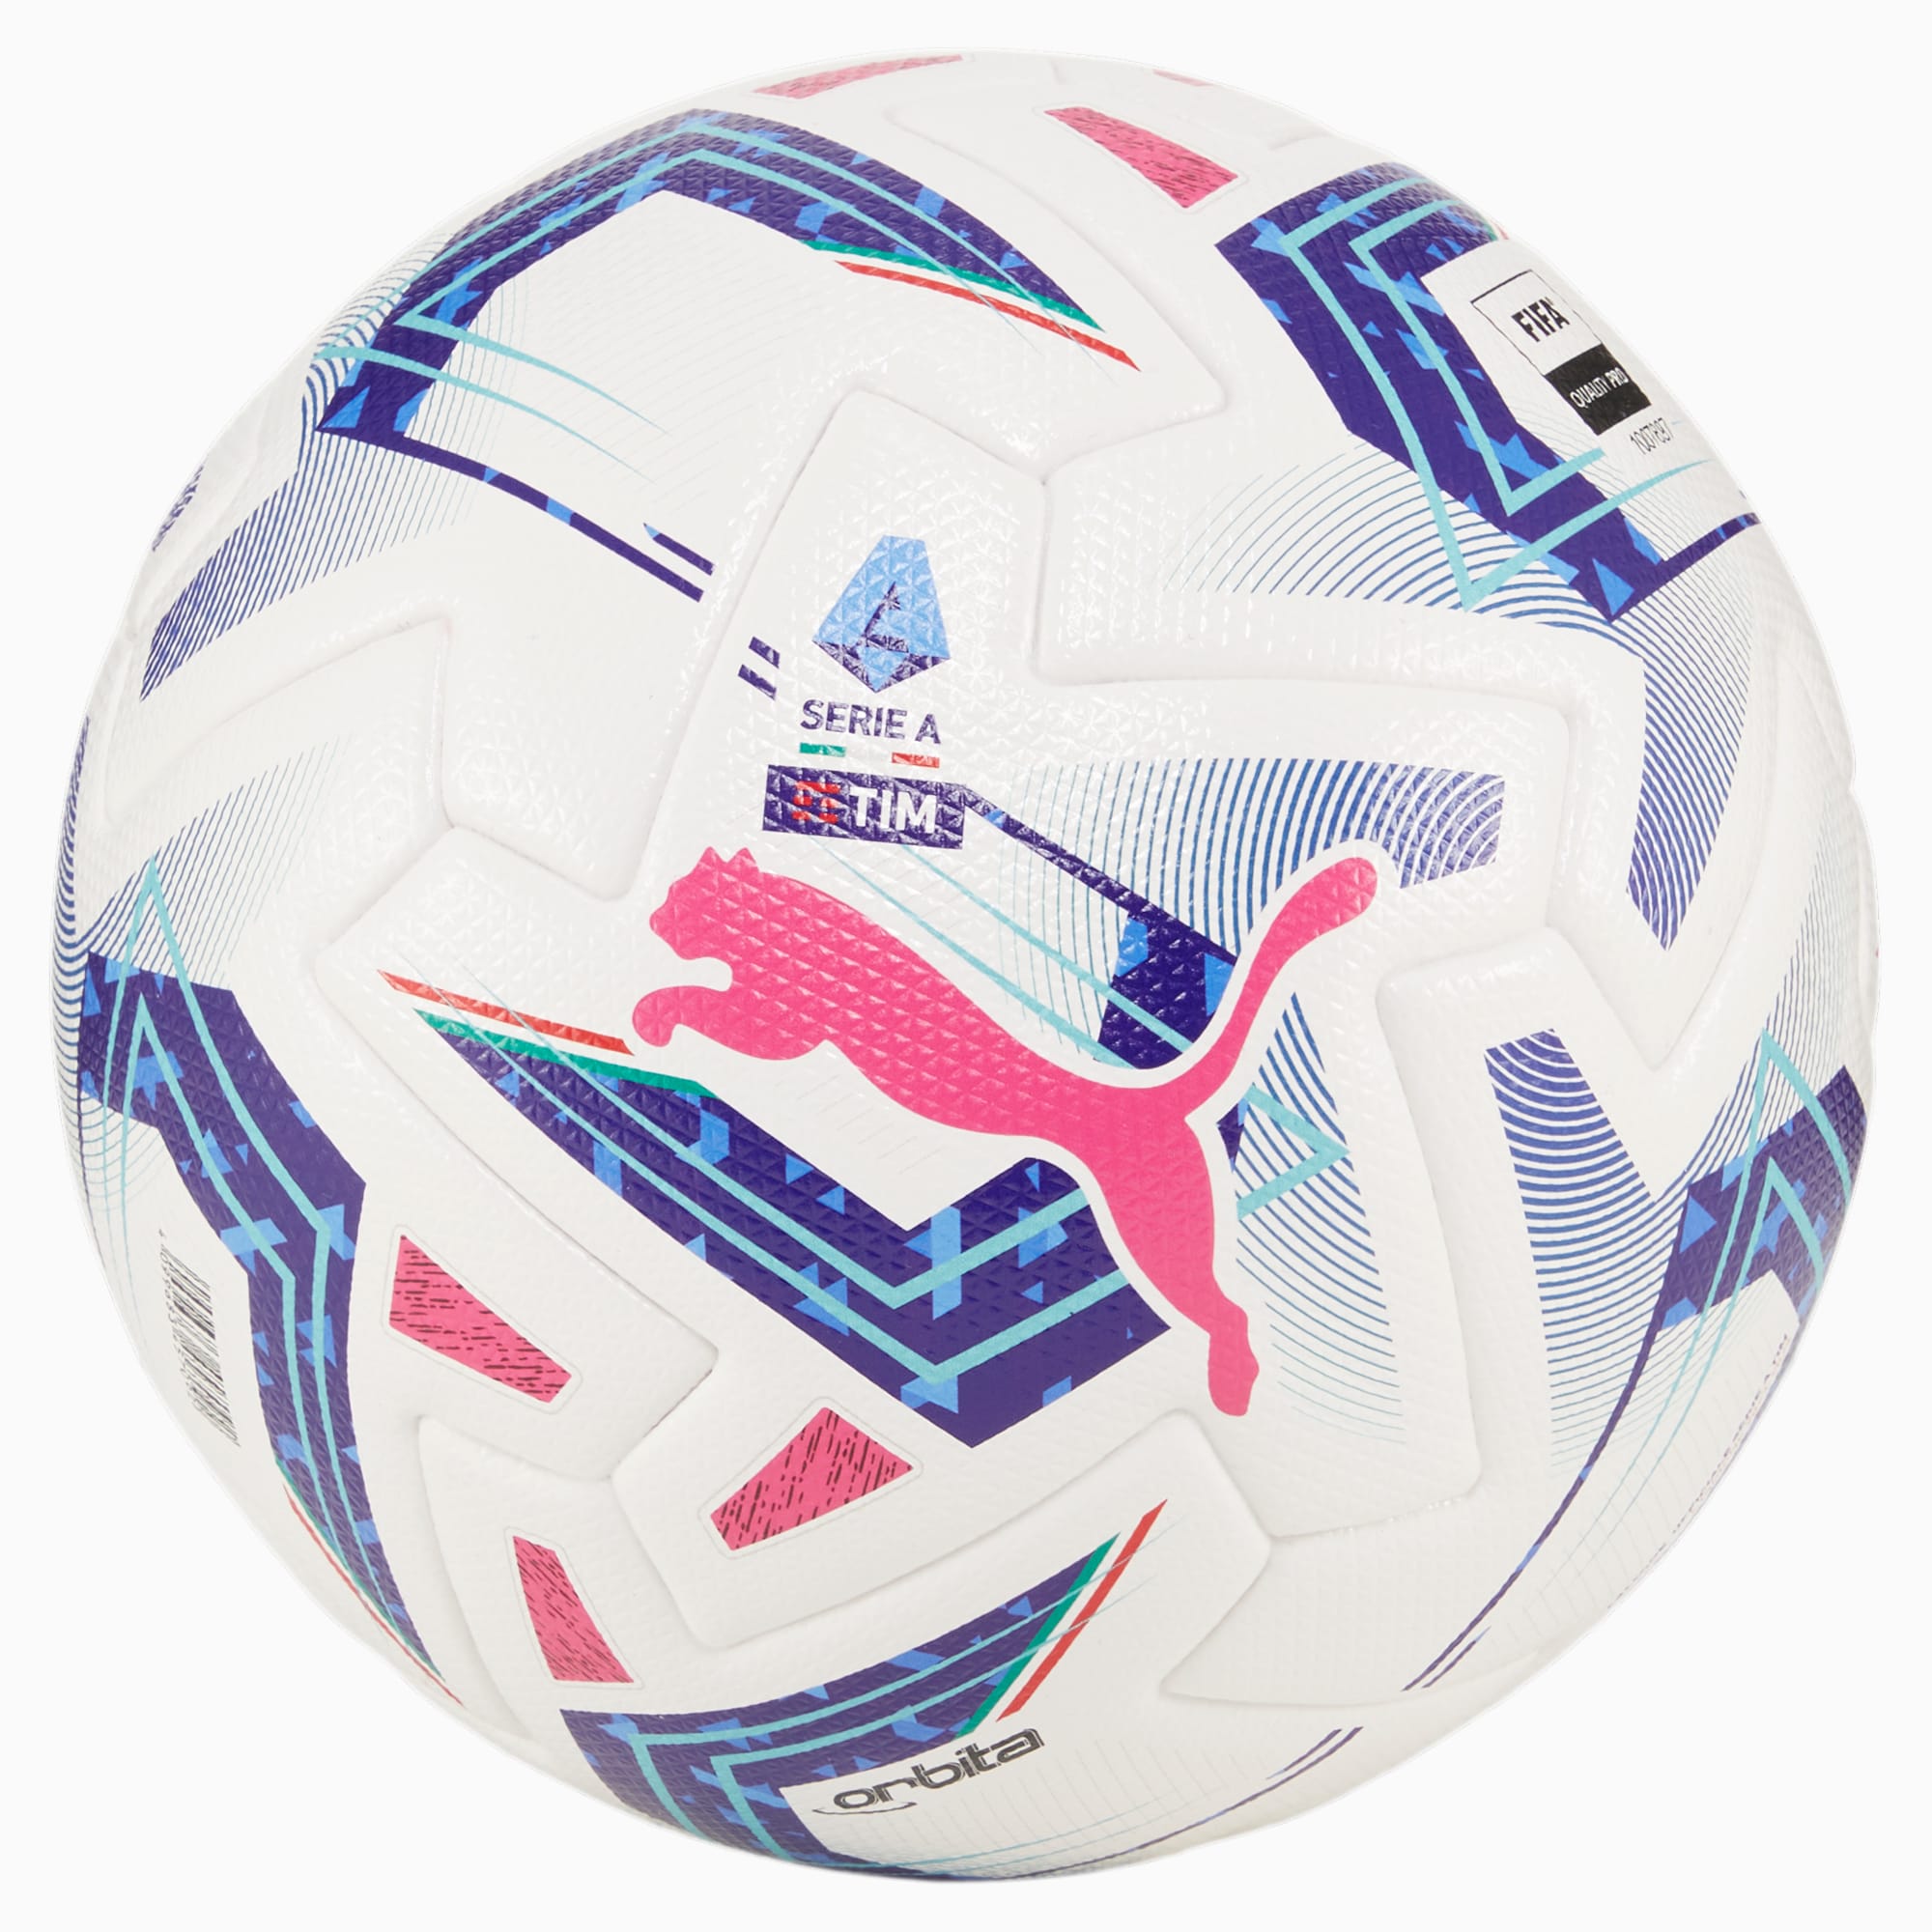 PUMA Orbita Serie A Pro Fußball Für Damen, Weiß/Blau, Größe: 5, Accessoires